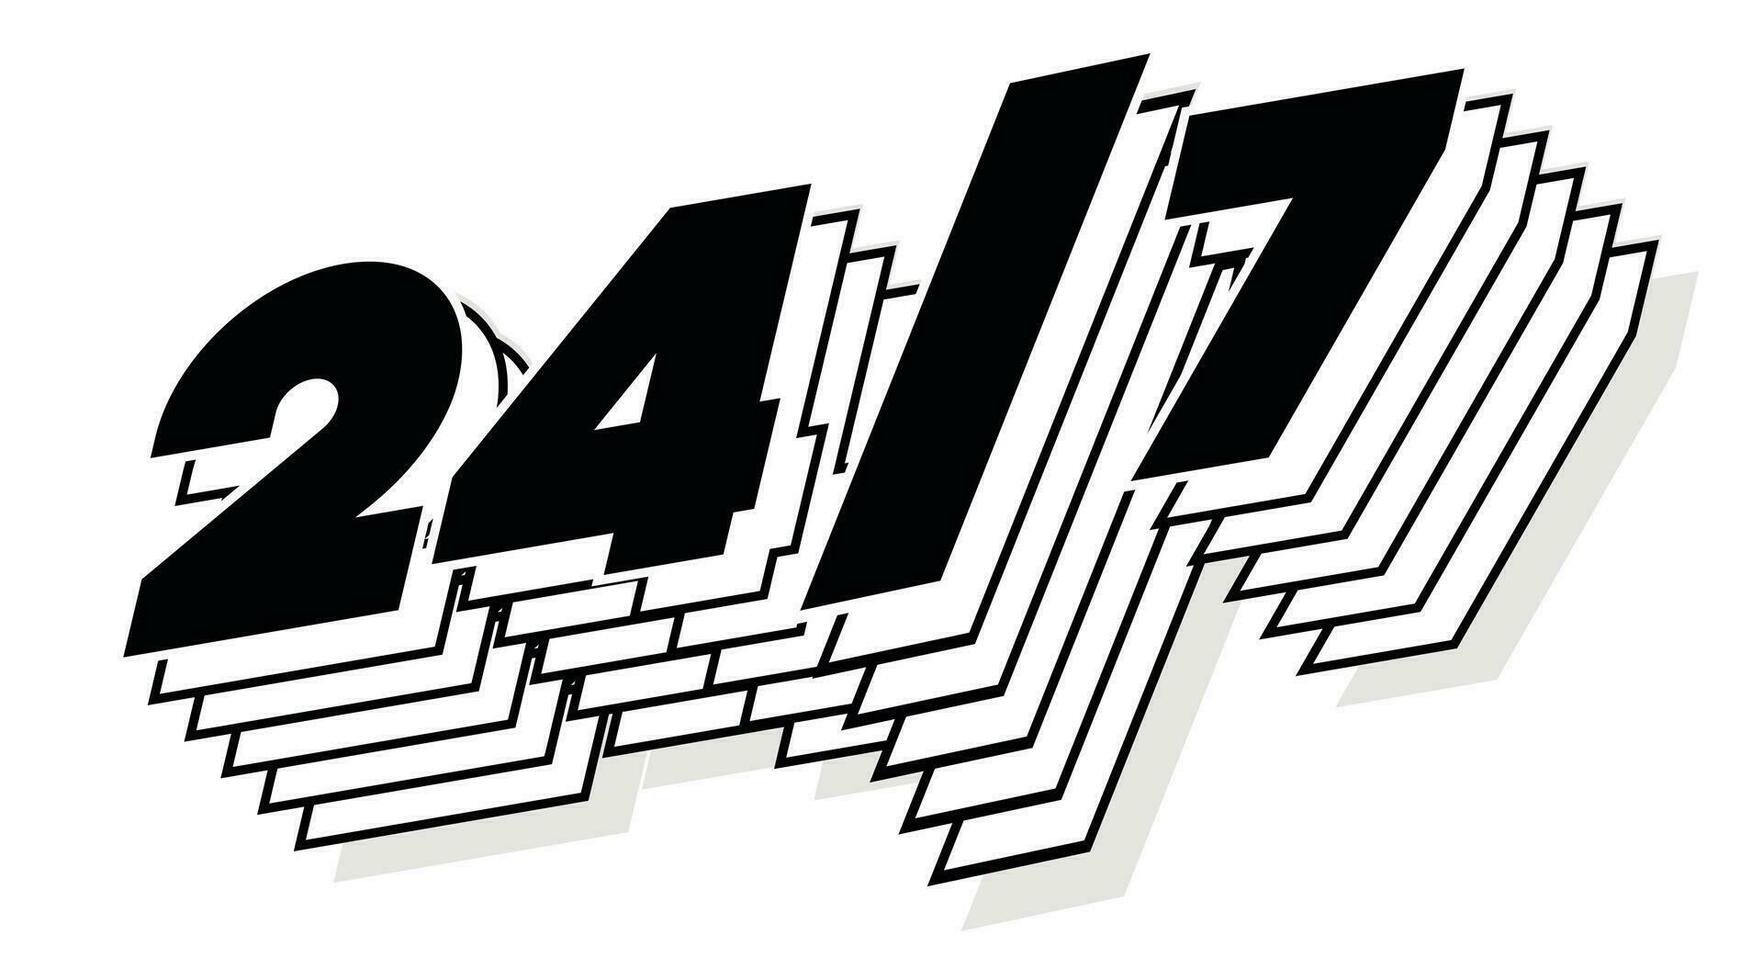 24 ore cartello moderno tipografia 3d stile vettore